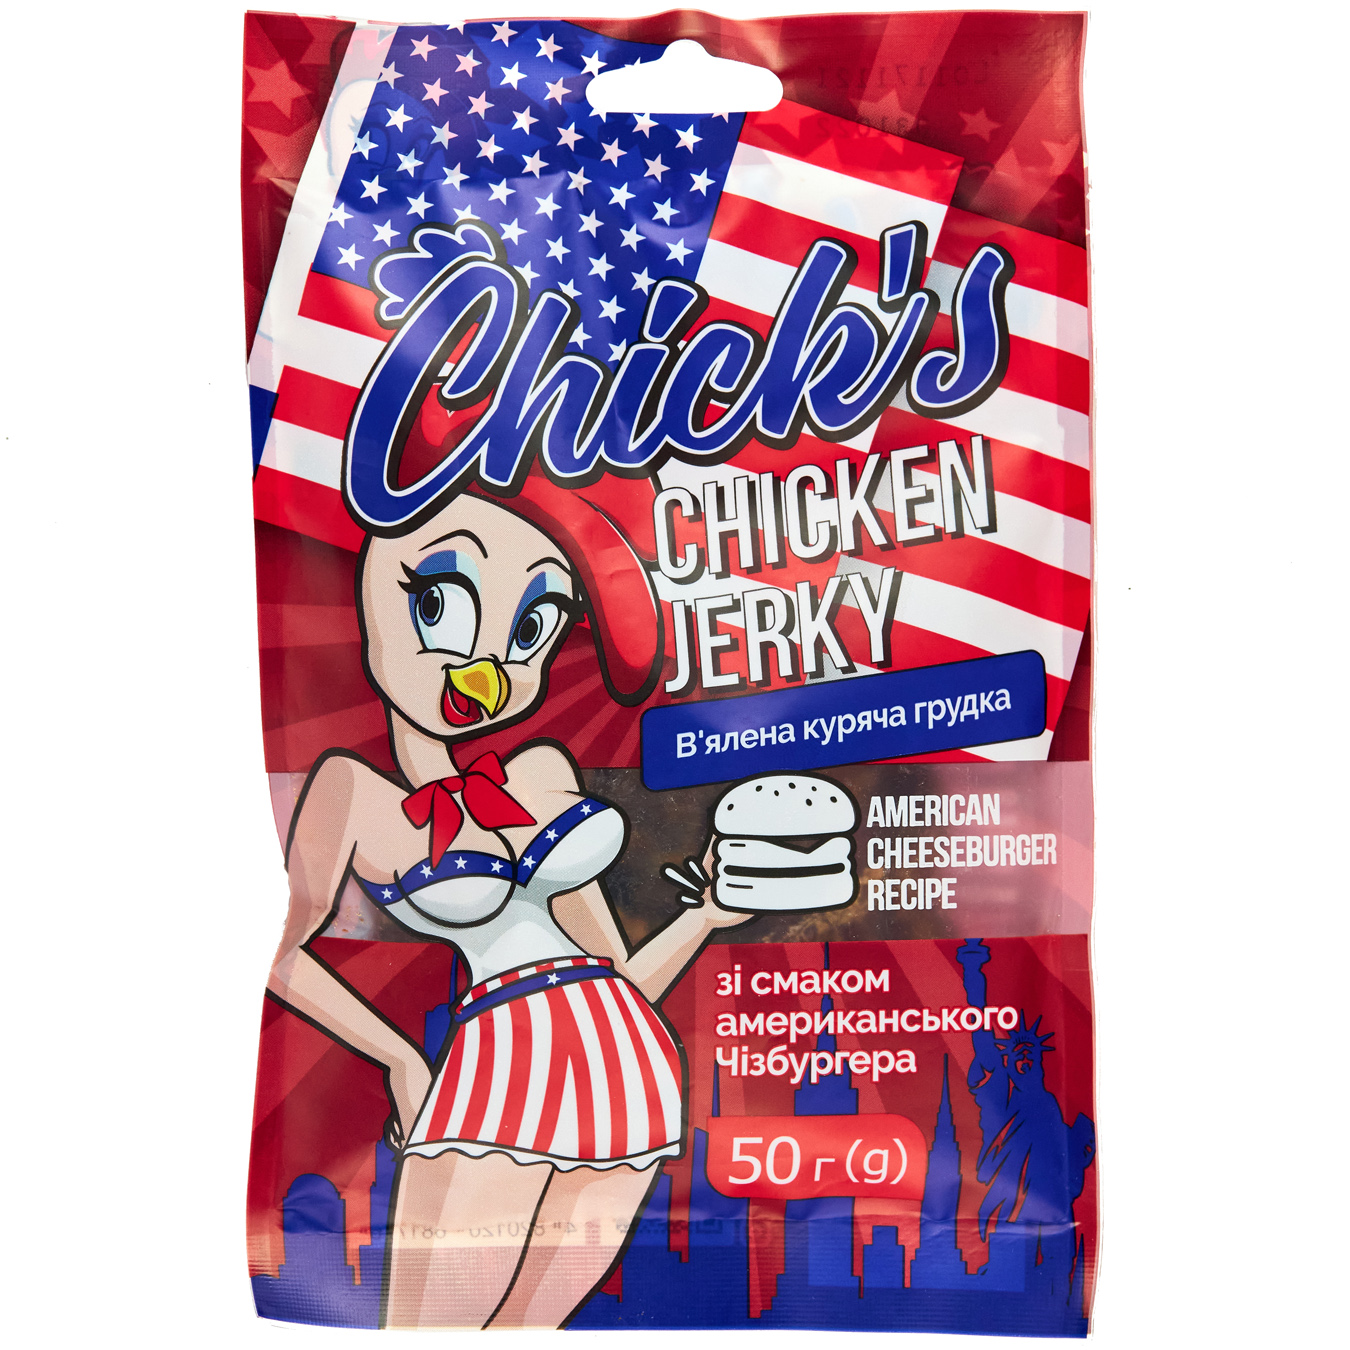 Джерки Chick’s куриный вкус американского чизбургера 50г